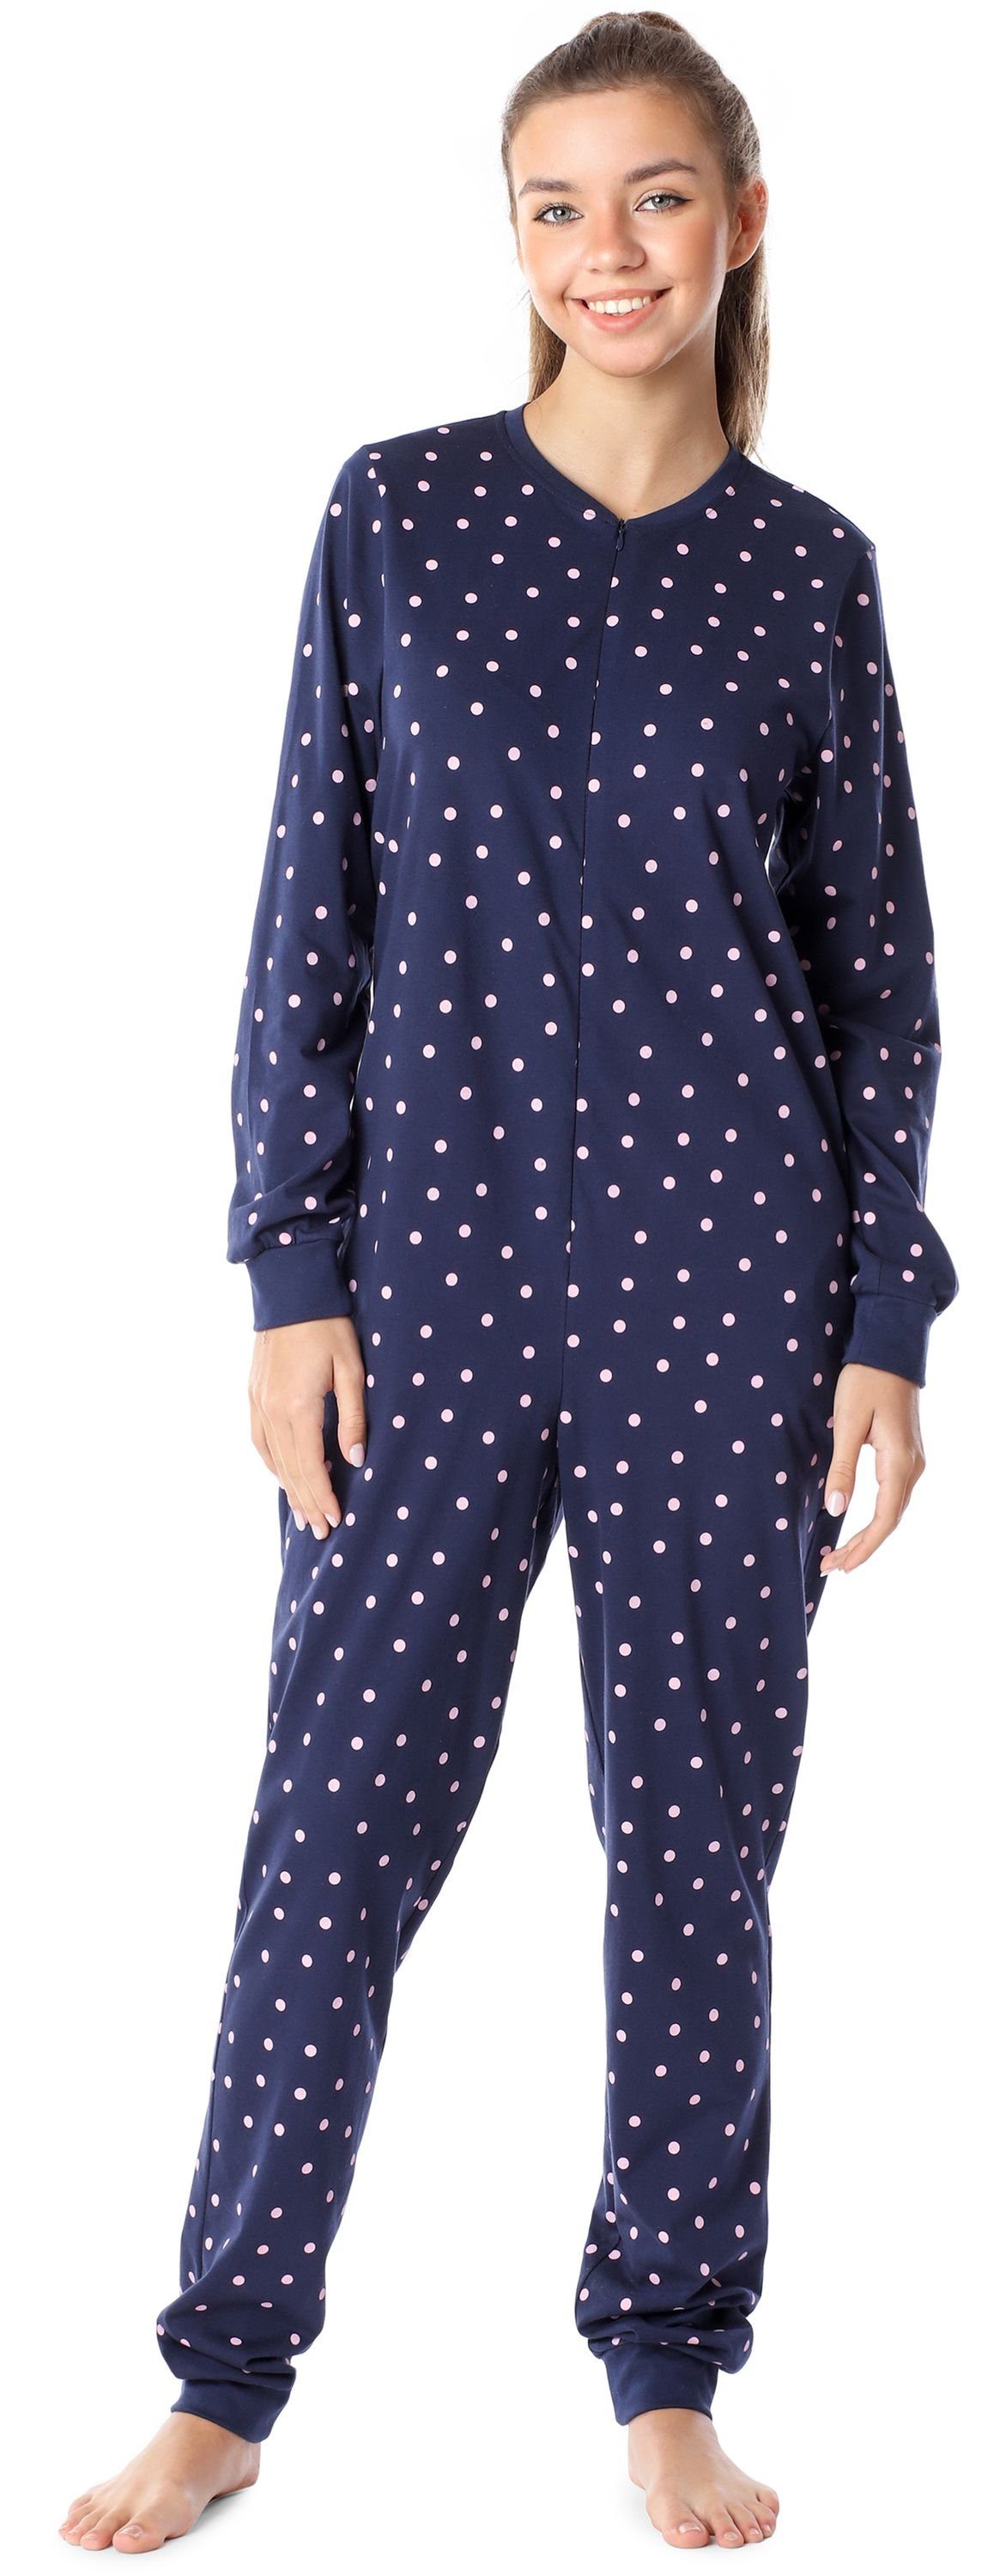 Merry Style Schlafanzug Jugend Schlafoverall Schlafanzug MS10-235 Marine/Punkte Mädchen